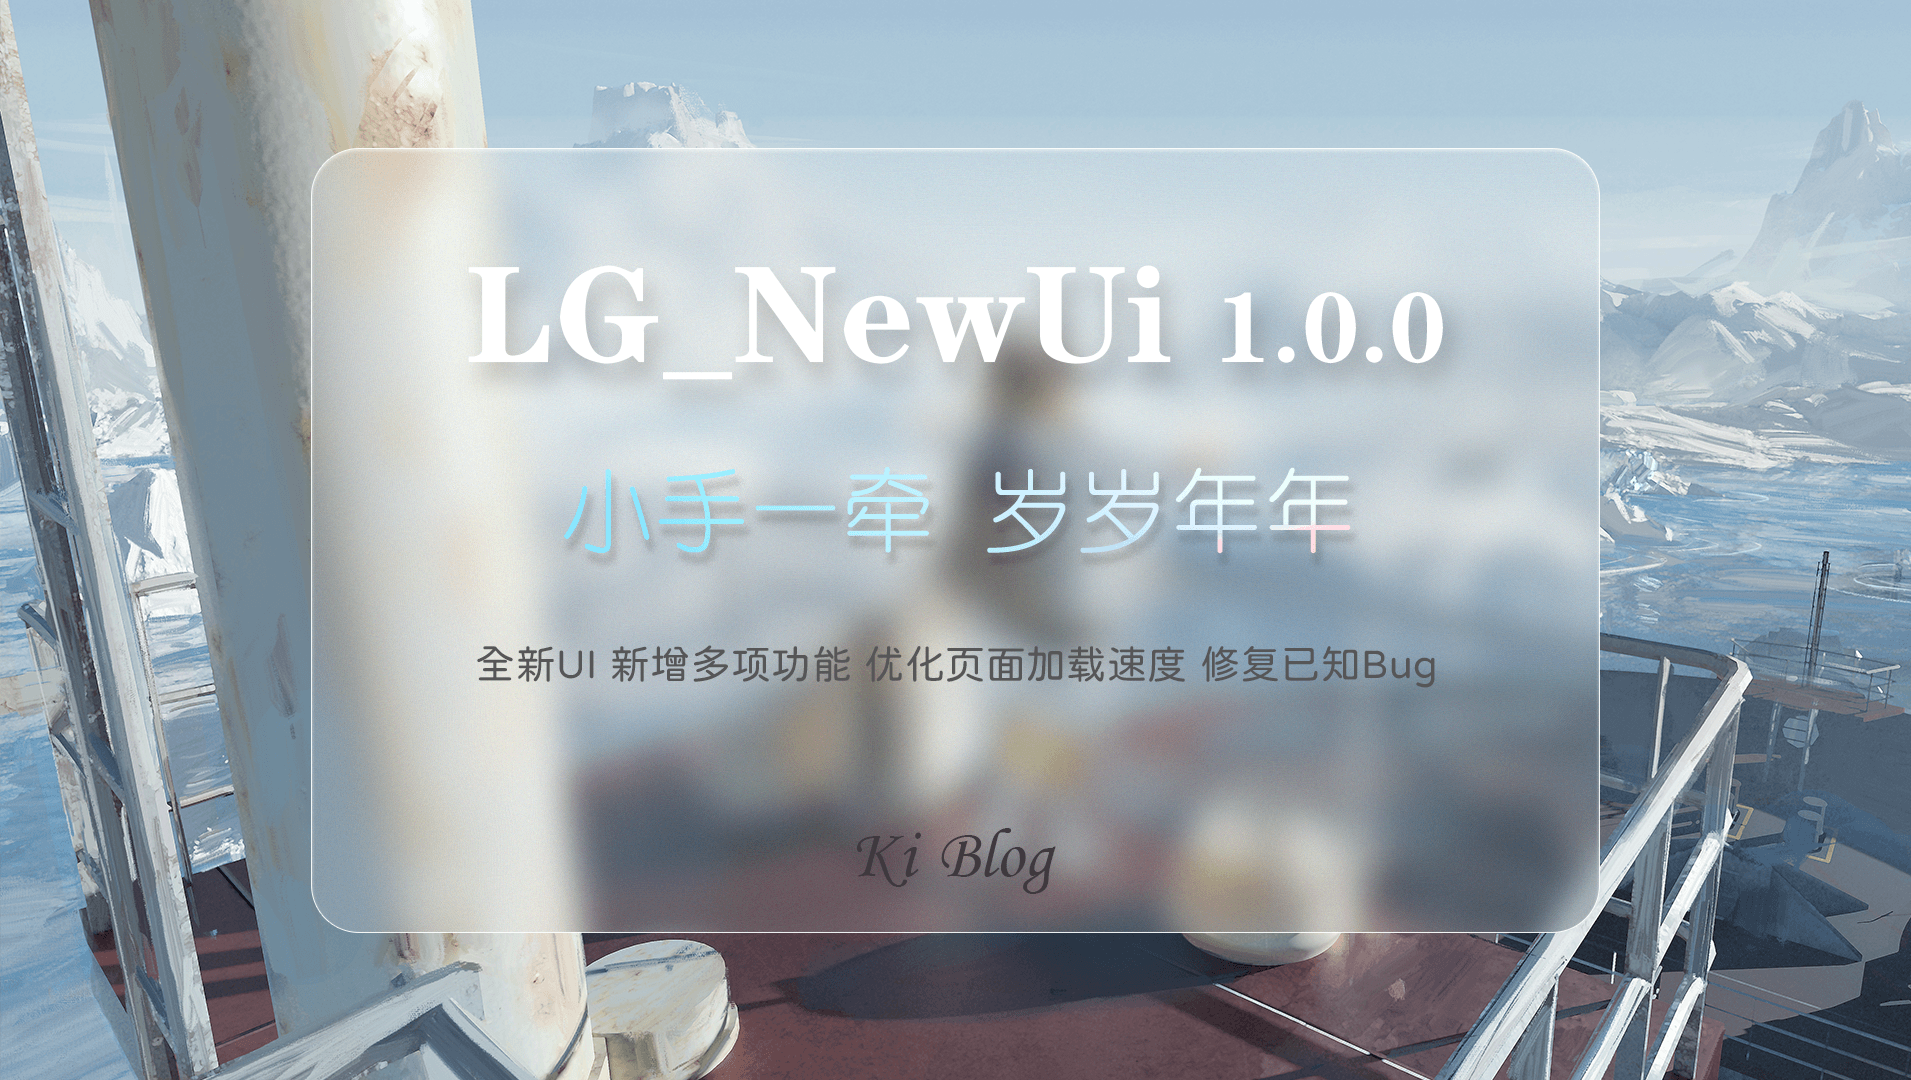 LG_NewUi v1.0.0 情侣小站新UI